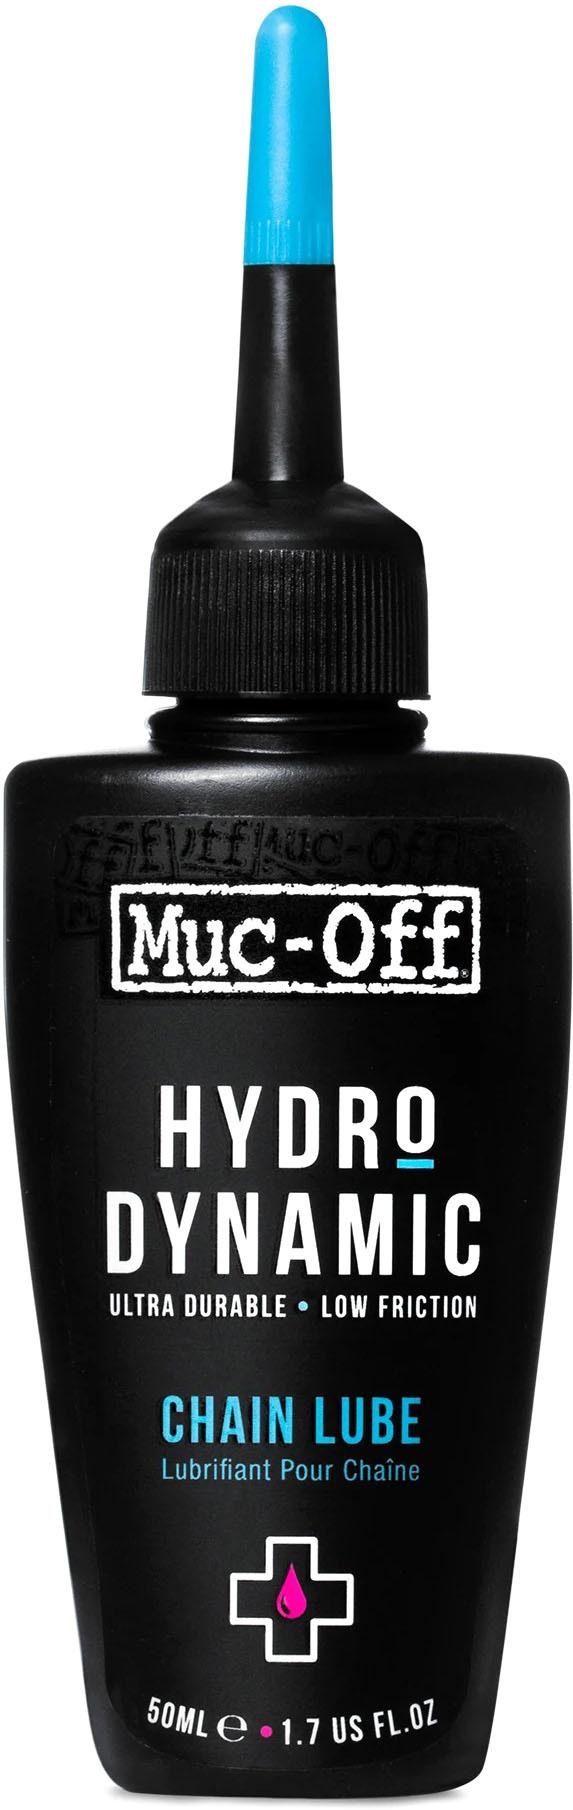 Muc-off Hydrodynamic Chain Lube  Black/blue